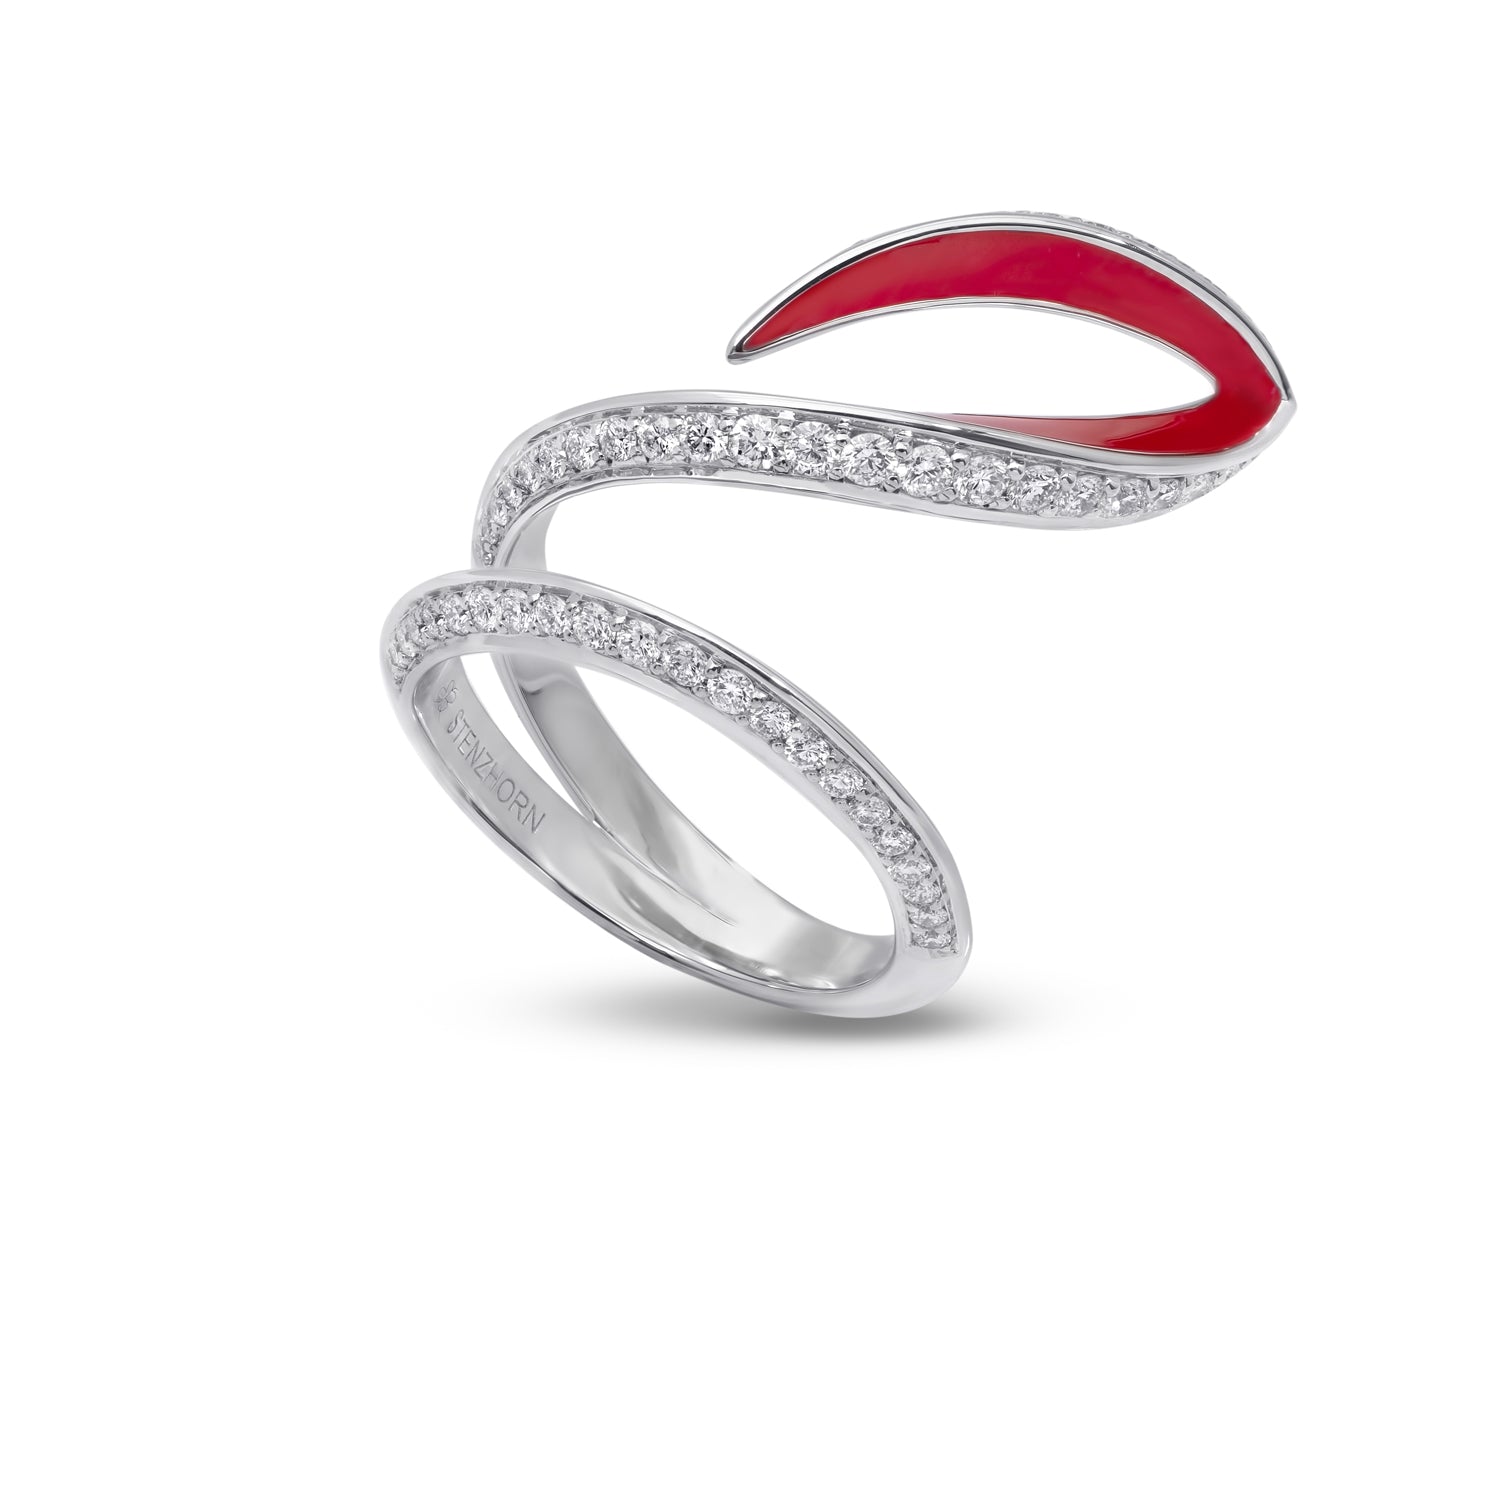 VIVA geschwungener Ring mit Diamant und roter Emaille